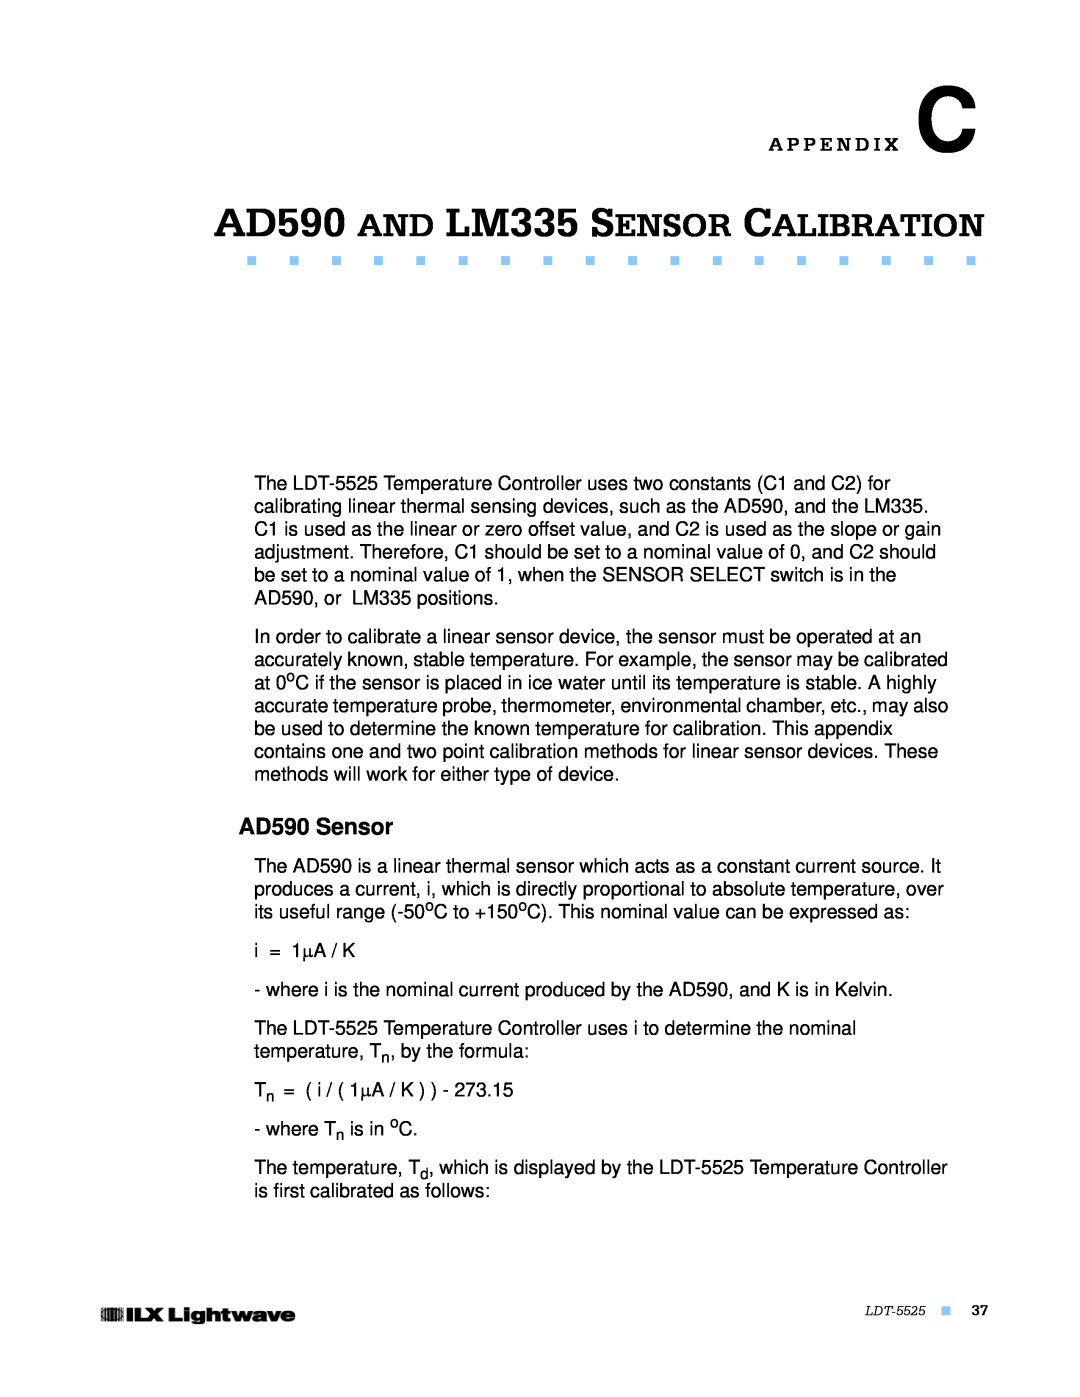 Lightwave Communications LDT-5525 manual AD590 AND LM335 SENSOR CALIBRATION, AD590 Sensor, A P P E N D I X C 